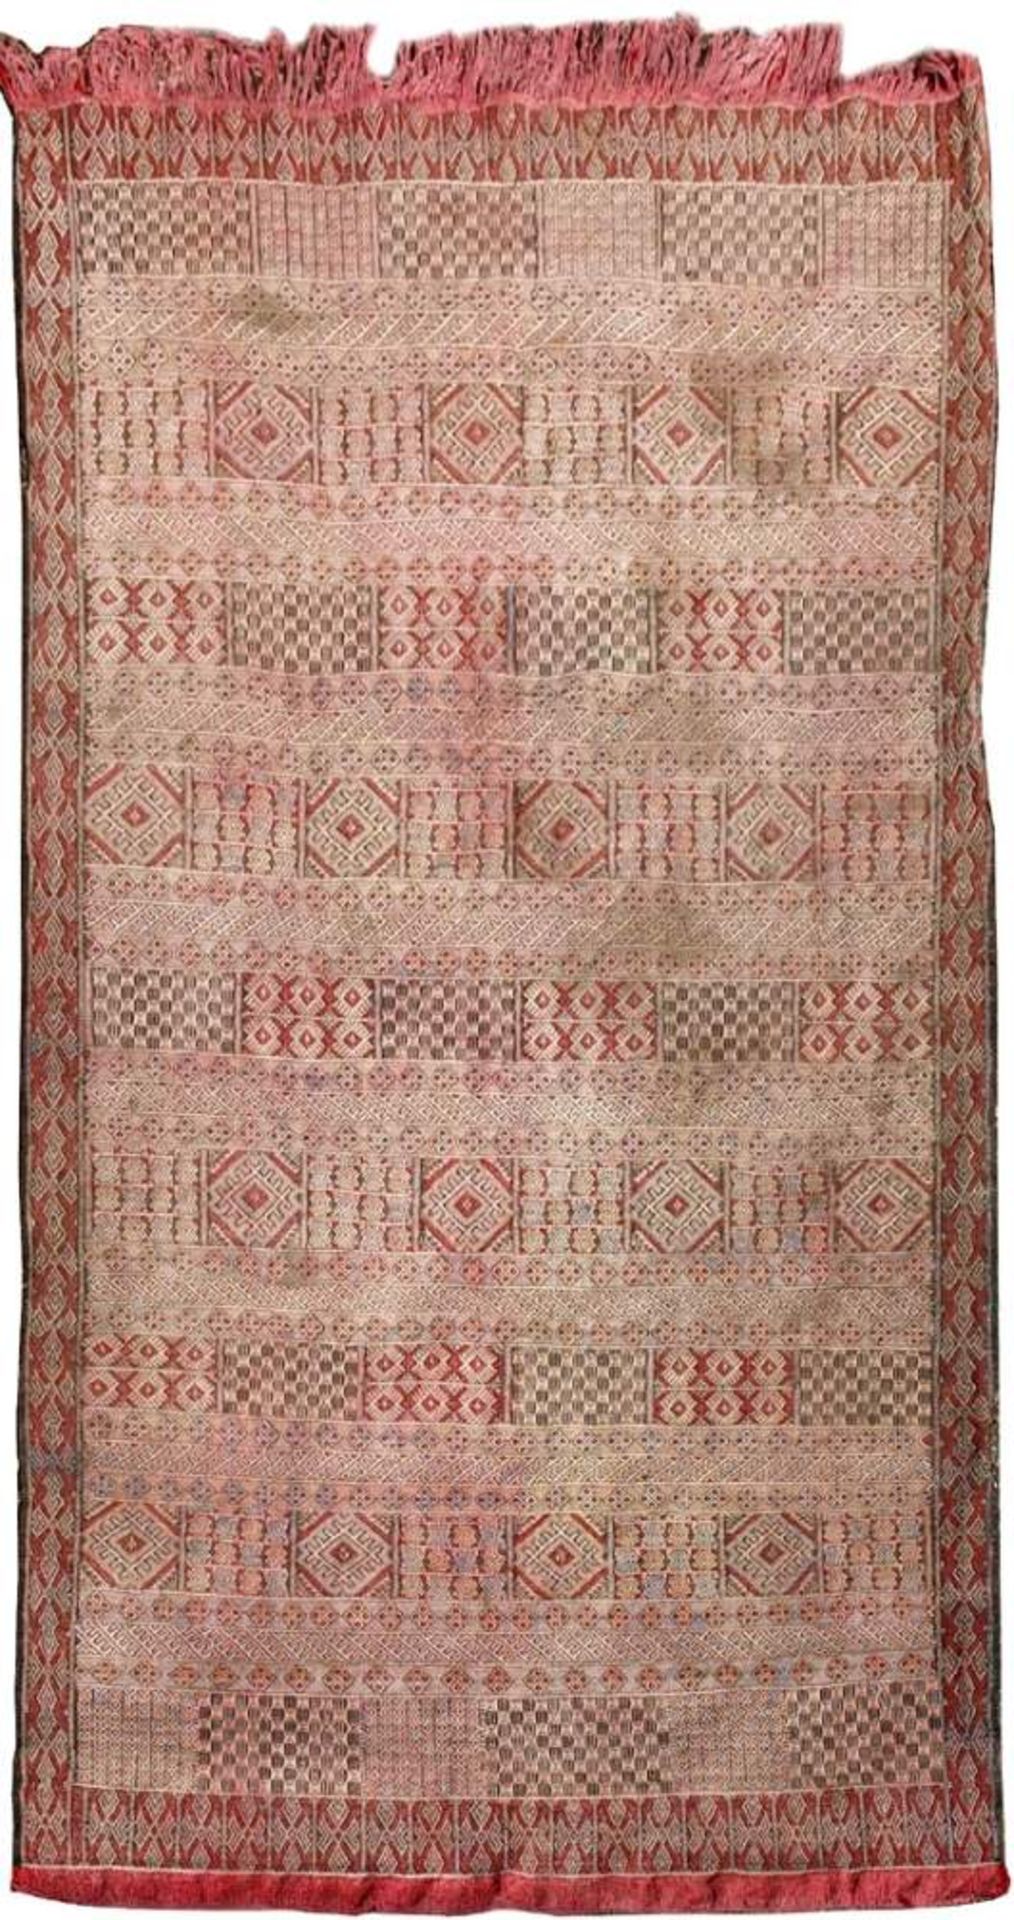 Webteppich, Tunesien, 20er/30er JahreZentralfeld mit symmetrischem Streifendekor, rotgrundige